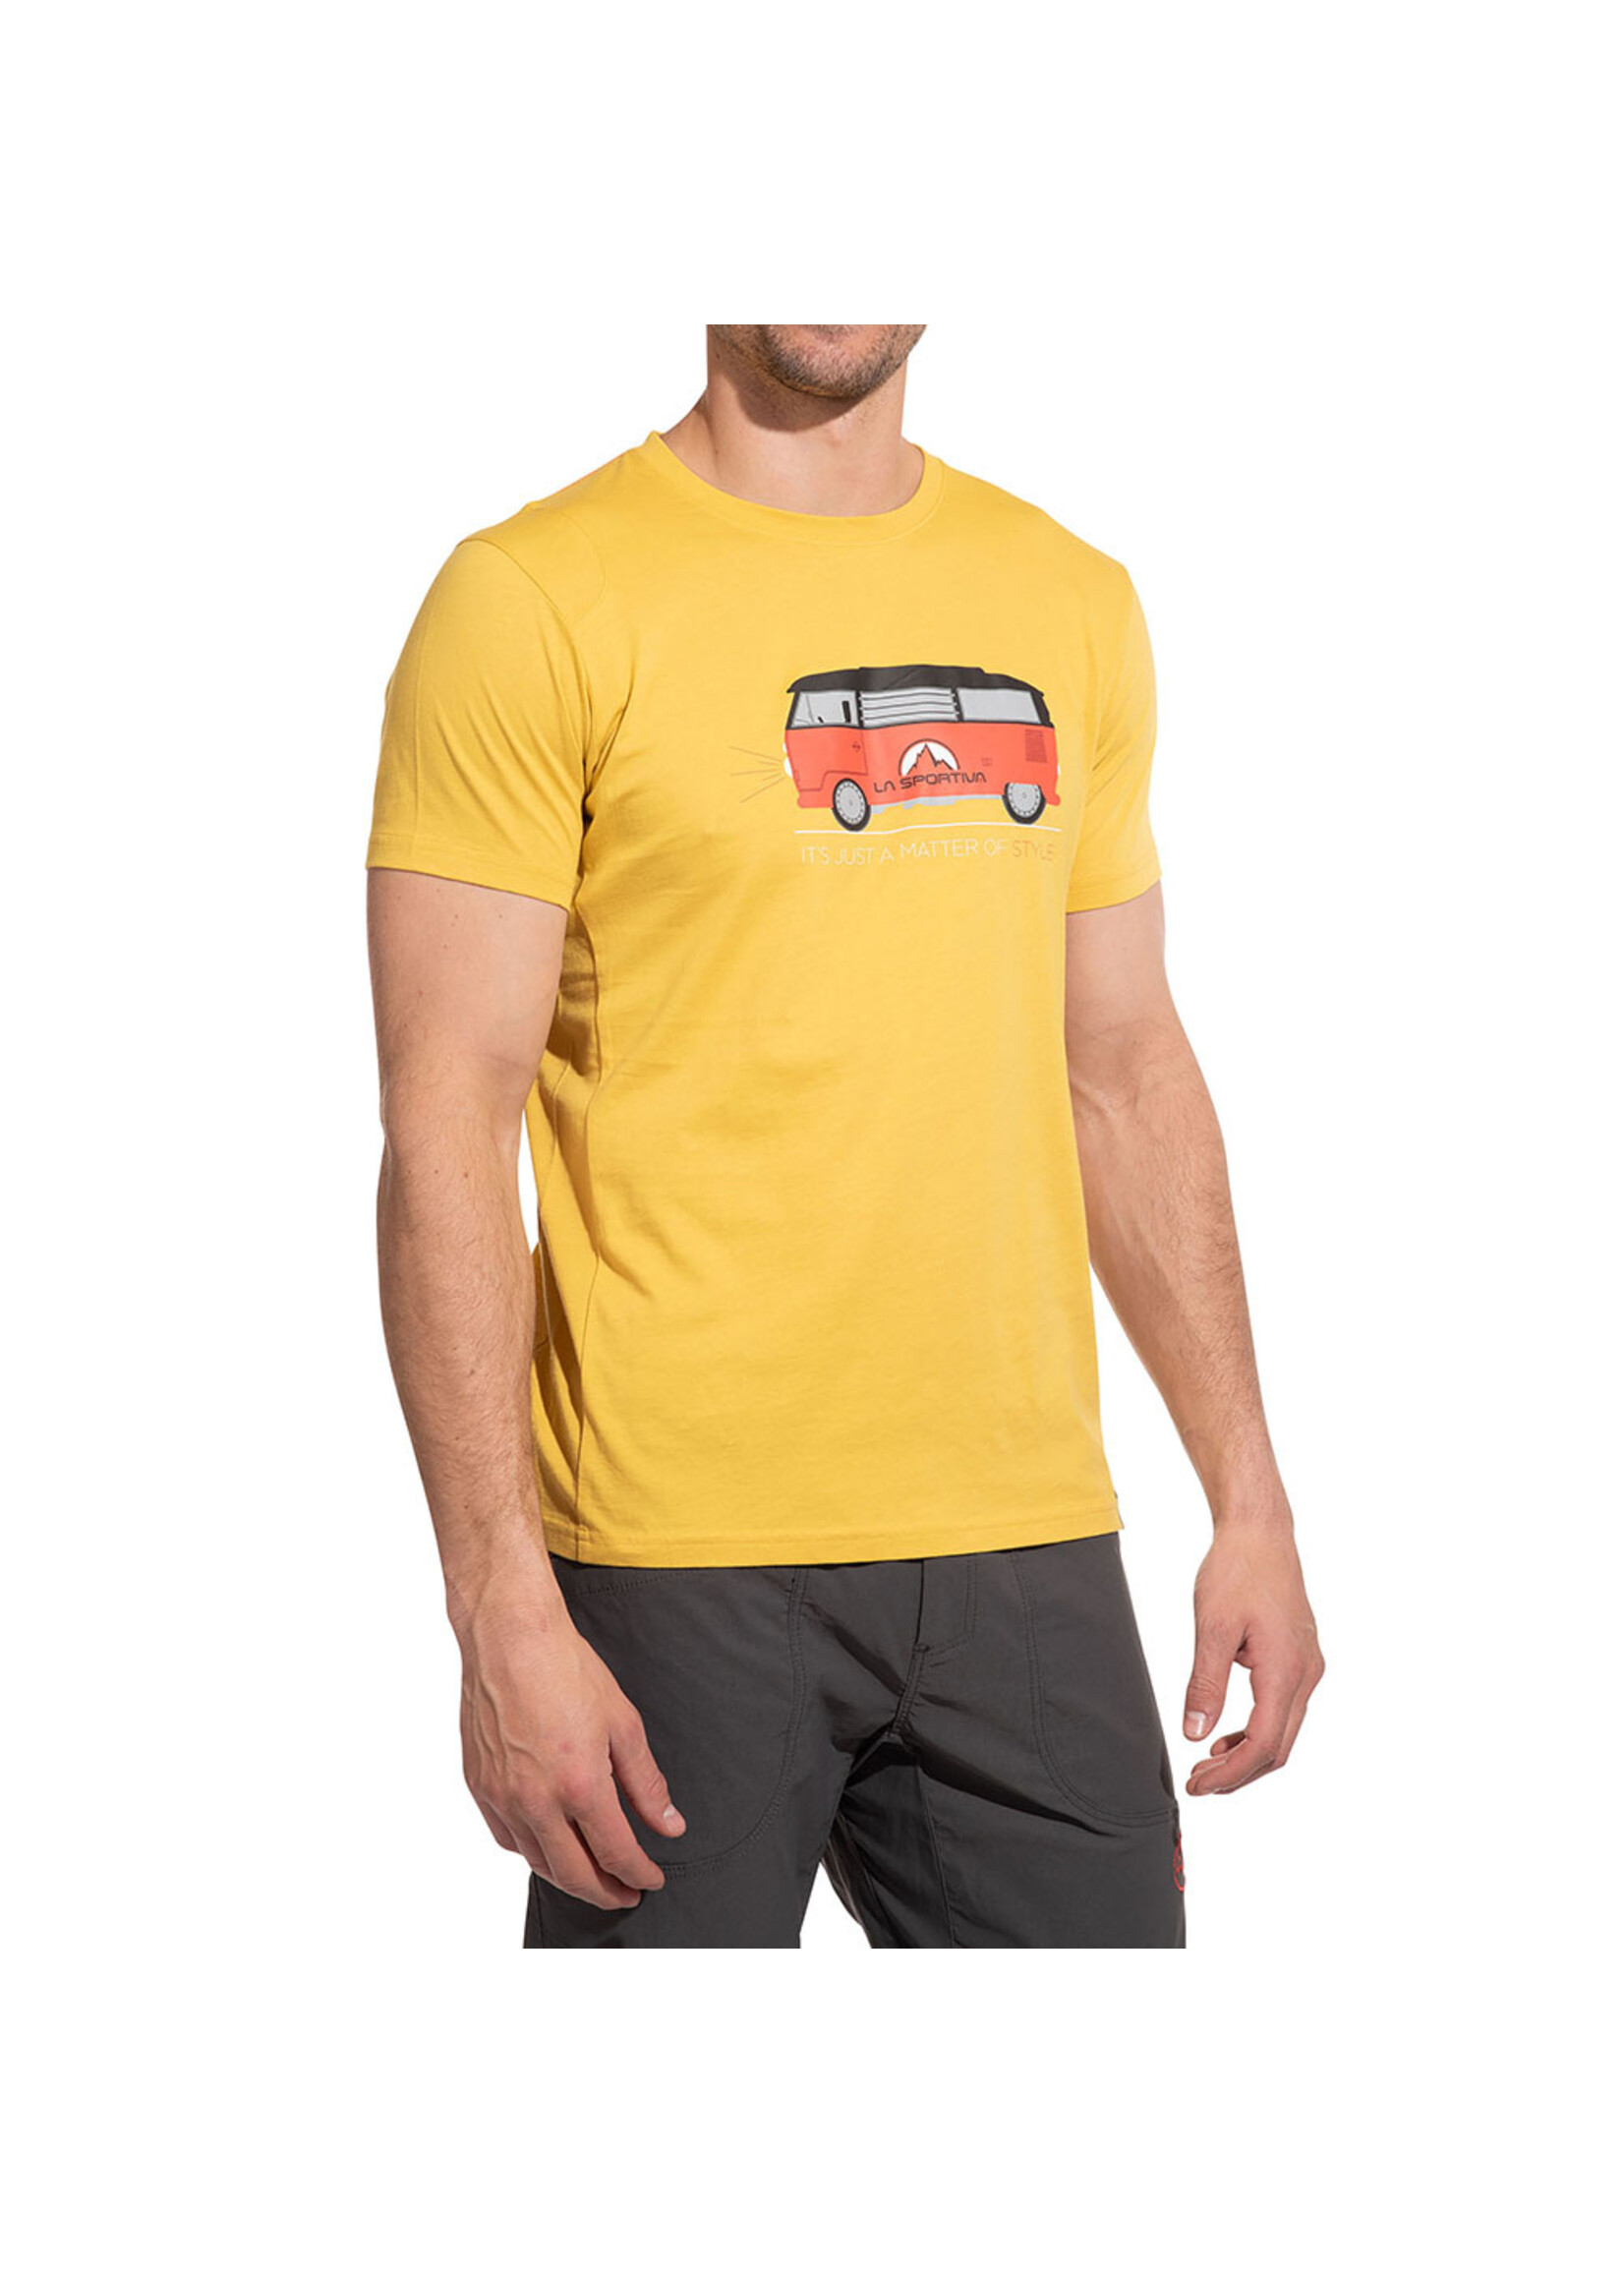 La Sportiva La Sportiva Van T-Shirt - Men